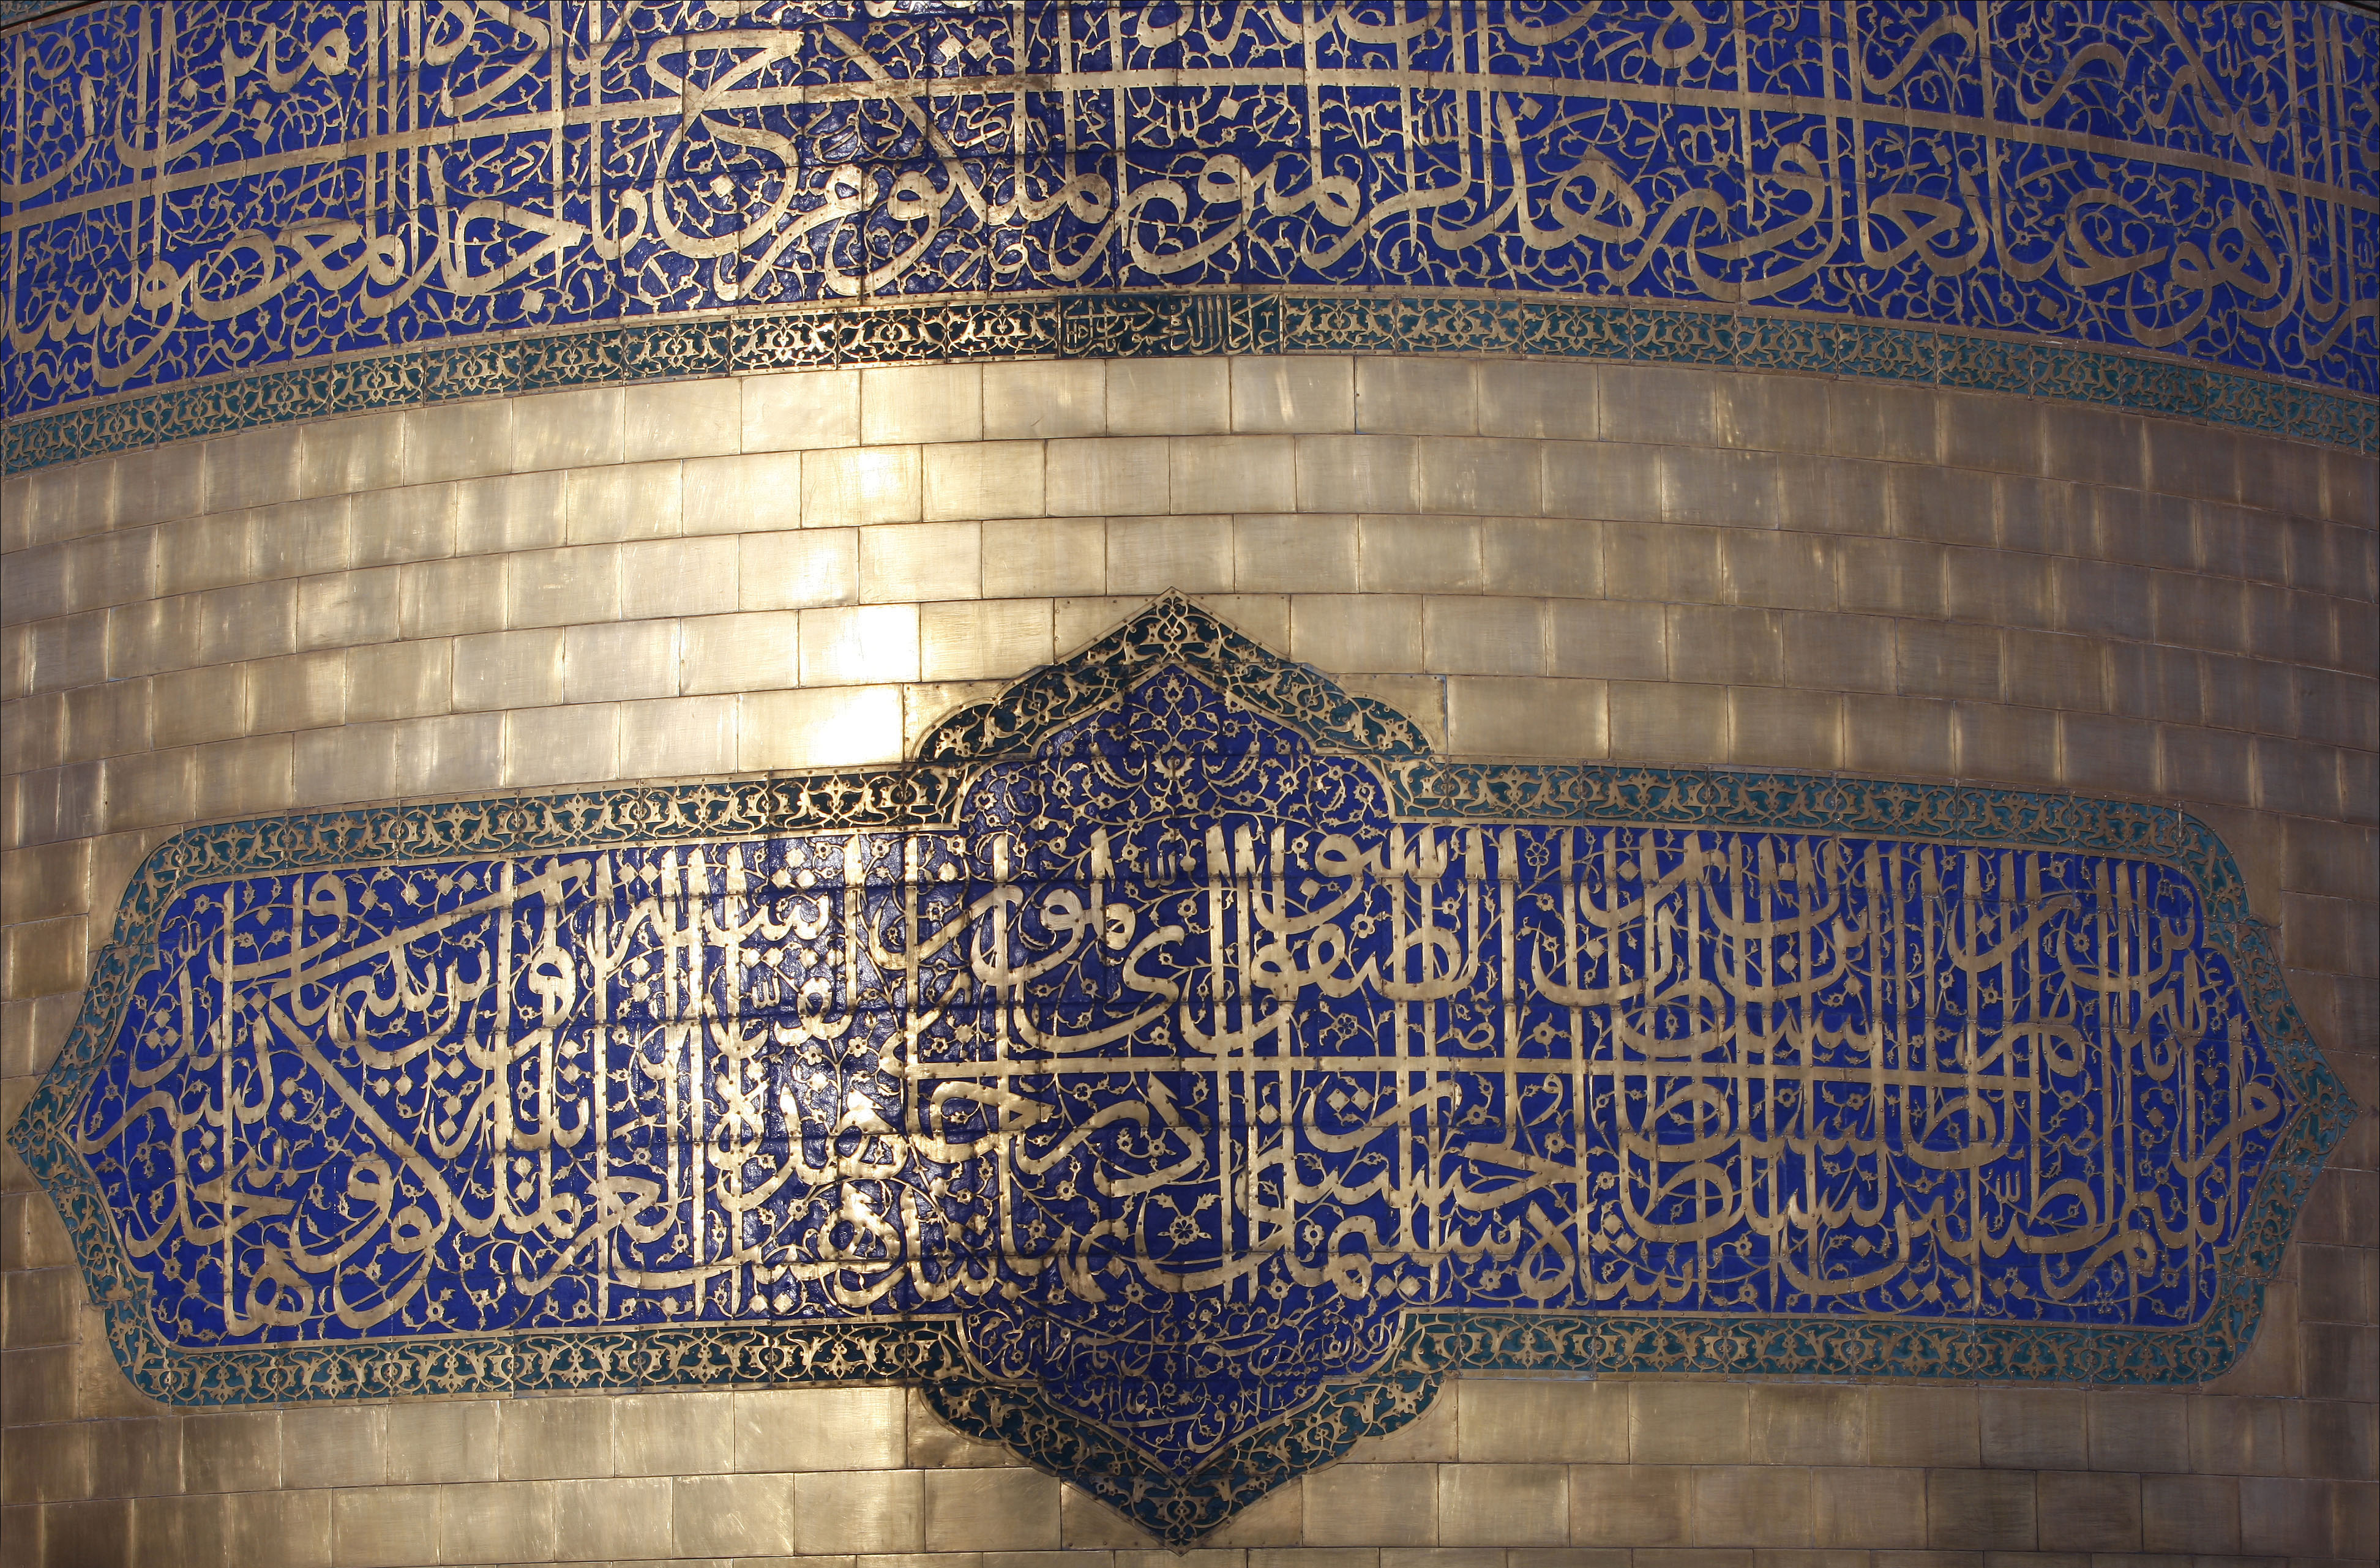 Исламские сонники золотая. Храм имама резы. Исламское искусство. Орнамент и каллиграфия в мечетях. Арабская каллиграфия в архитектуре.